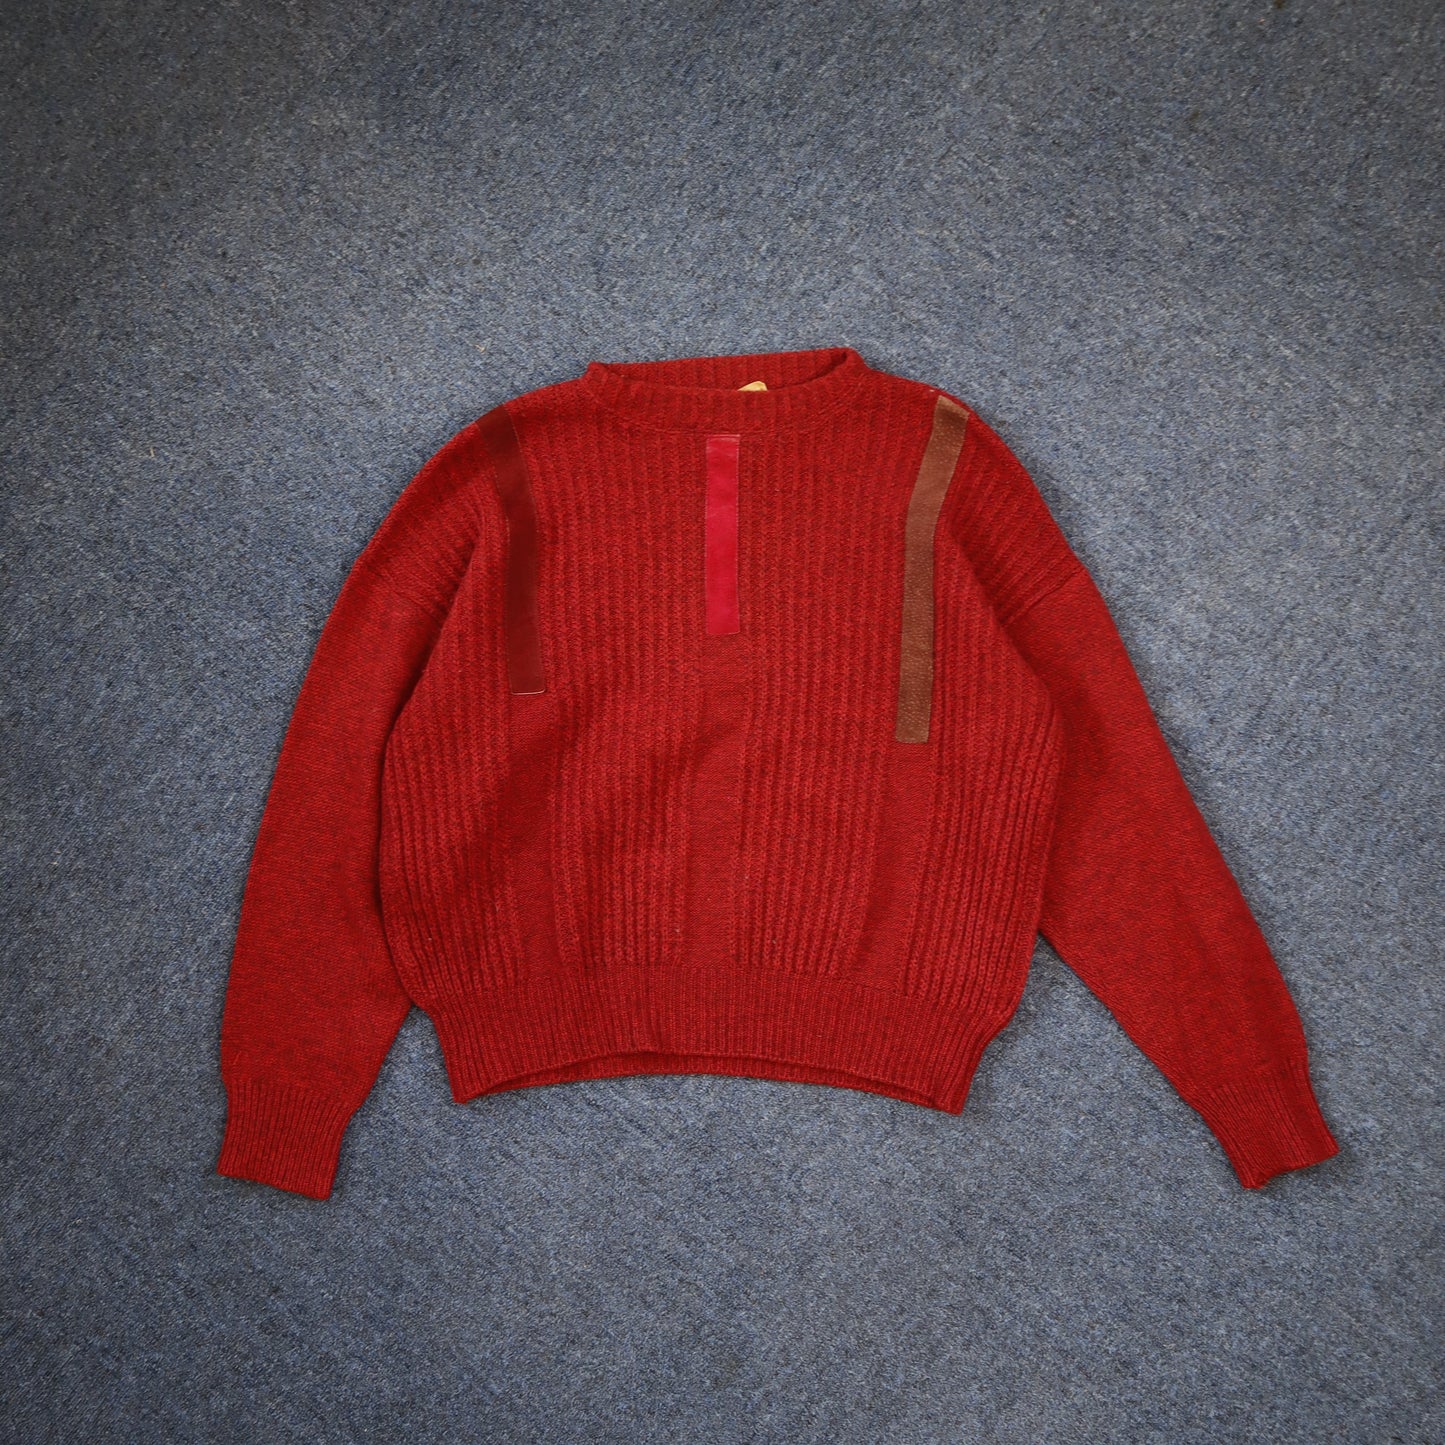 Heavyweight Knit Sweater